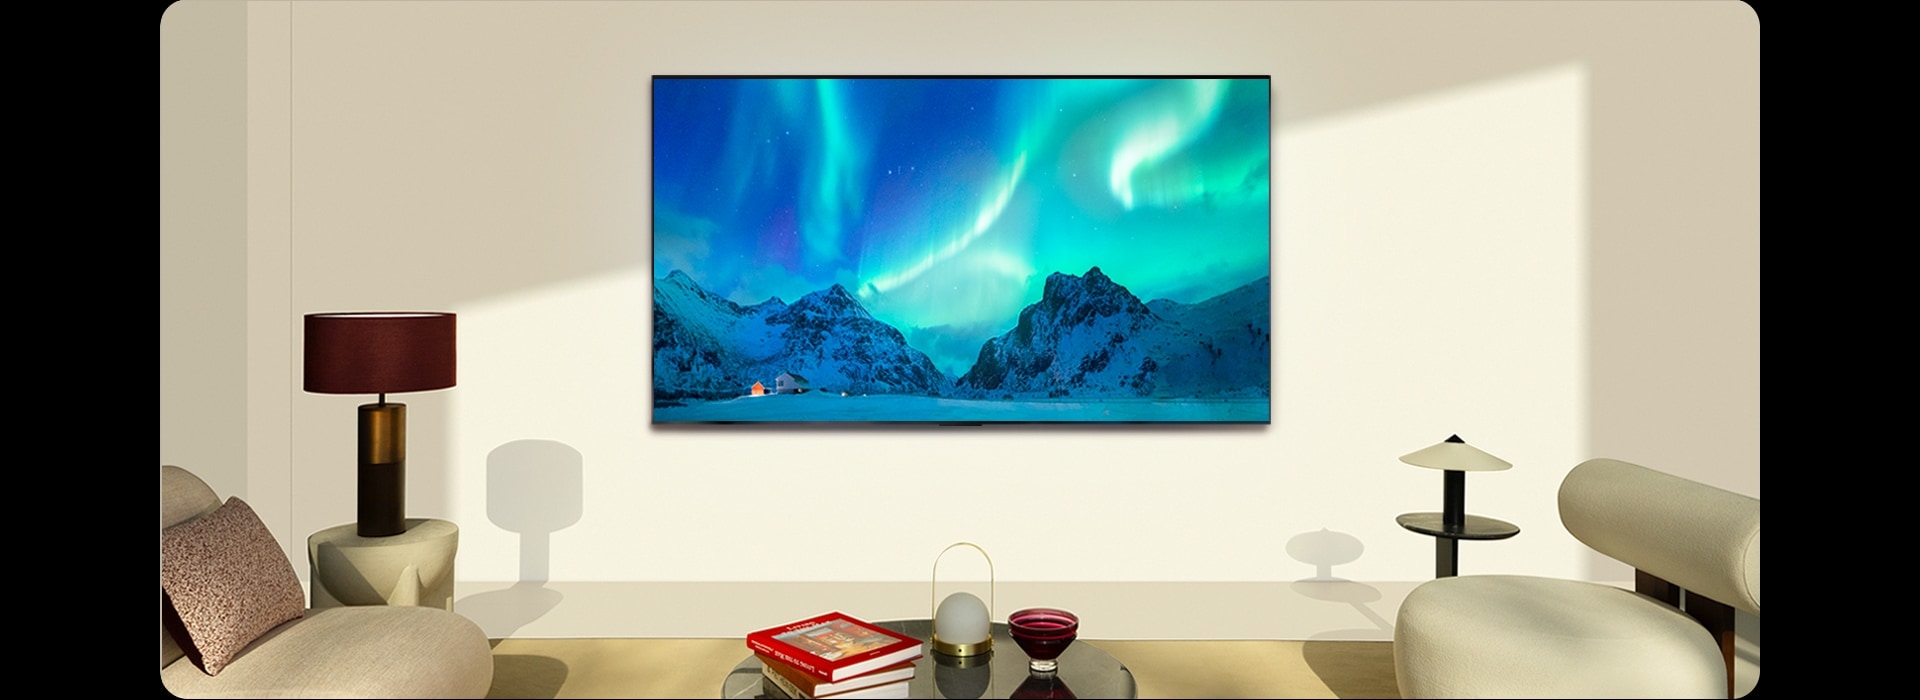 A imagem de uma LG TV e LG Soundbar num espaço habitacional moderno durante o dia. A imagem do ecrã da aurora boreal é exibida com os níveis de brilho ideais.